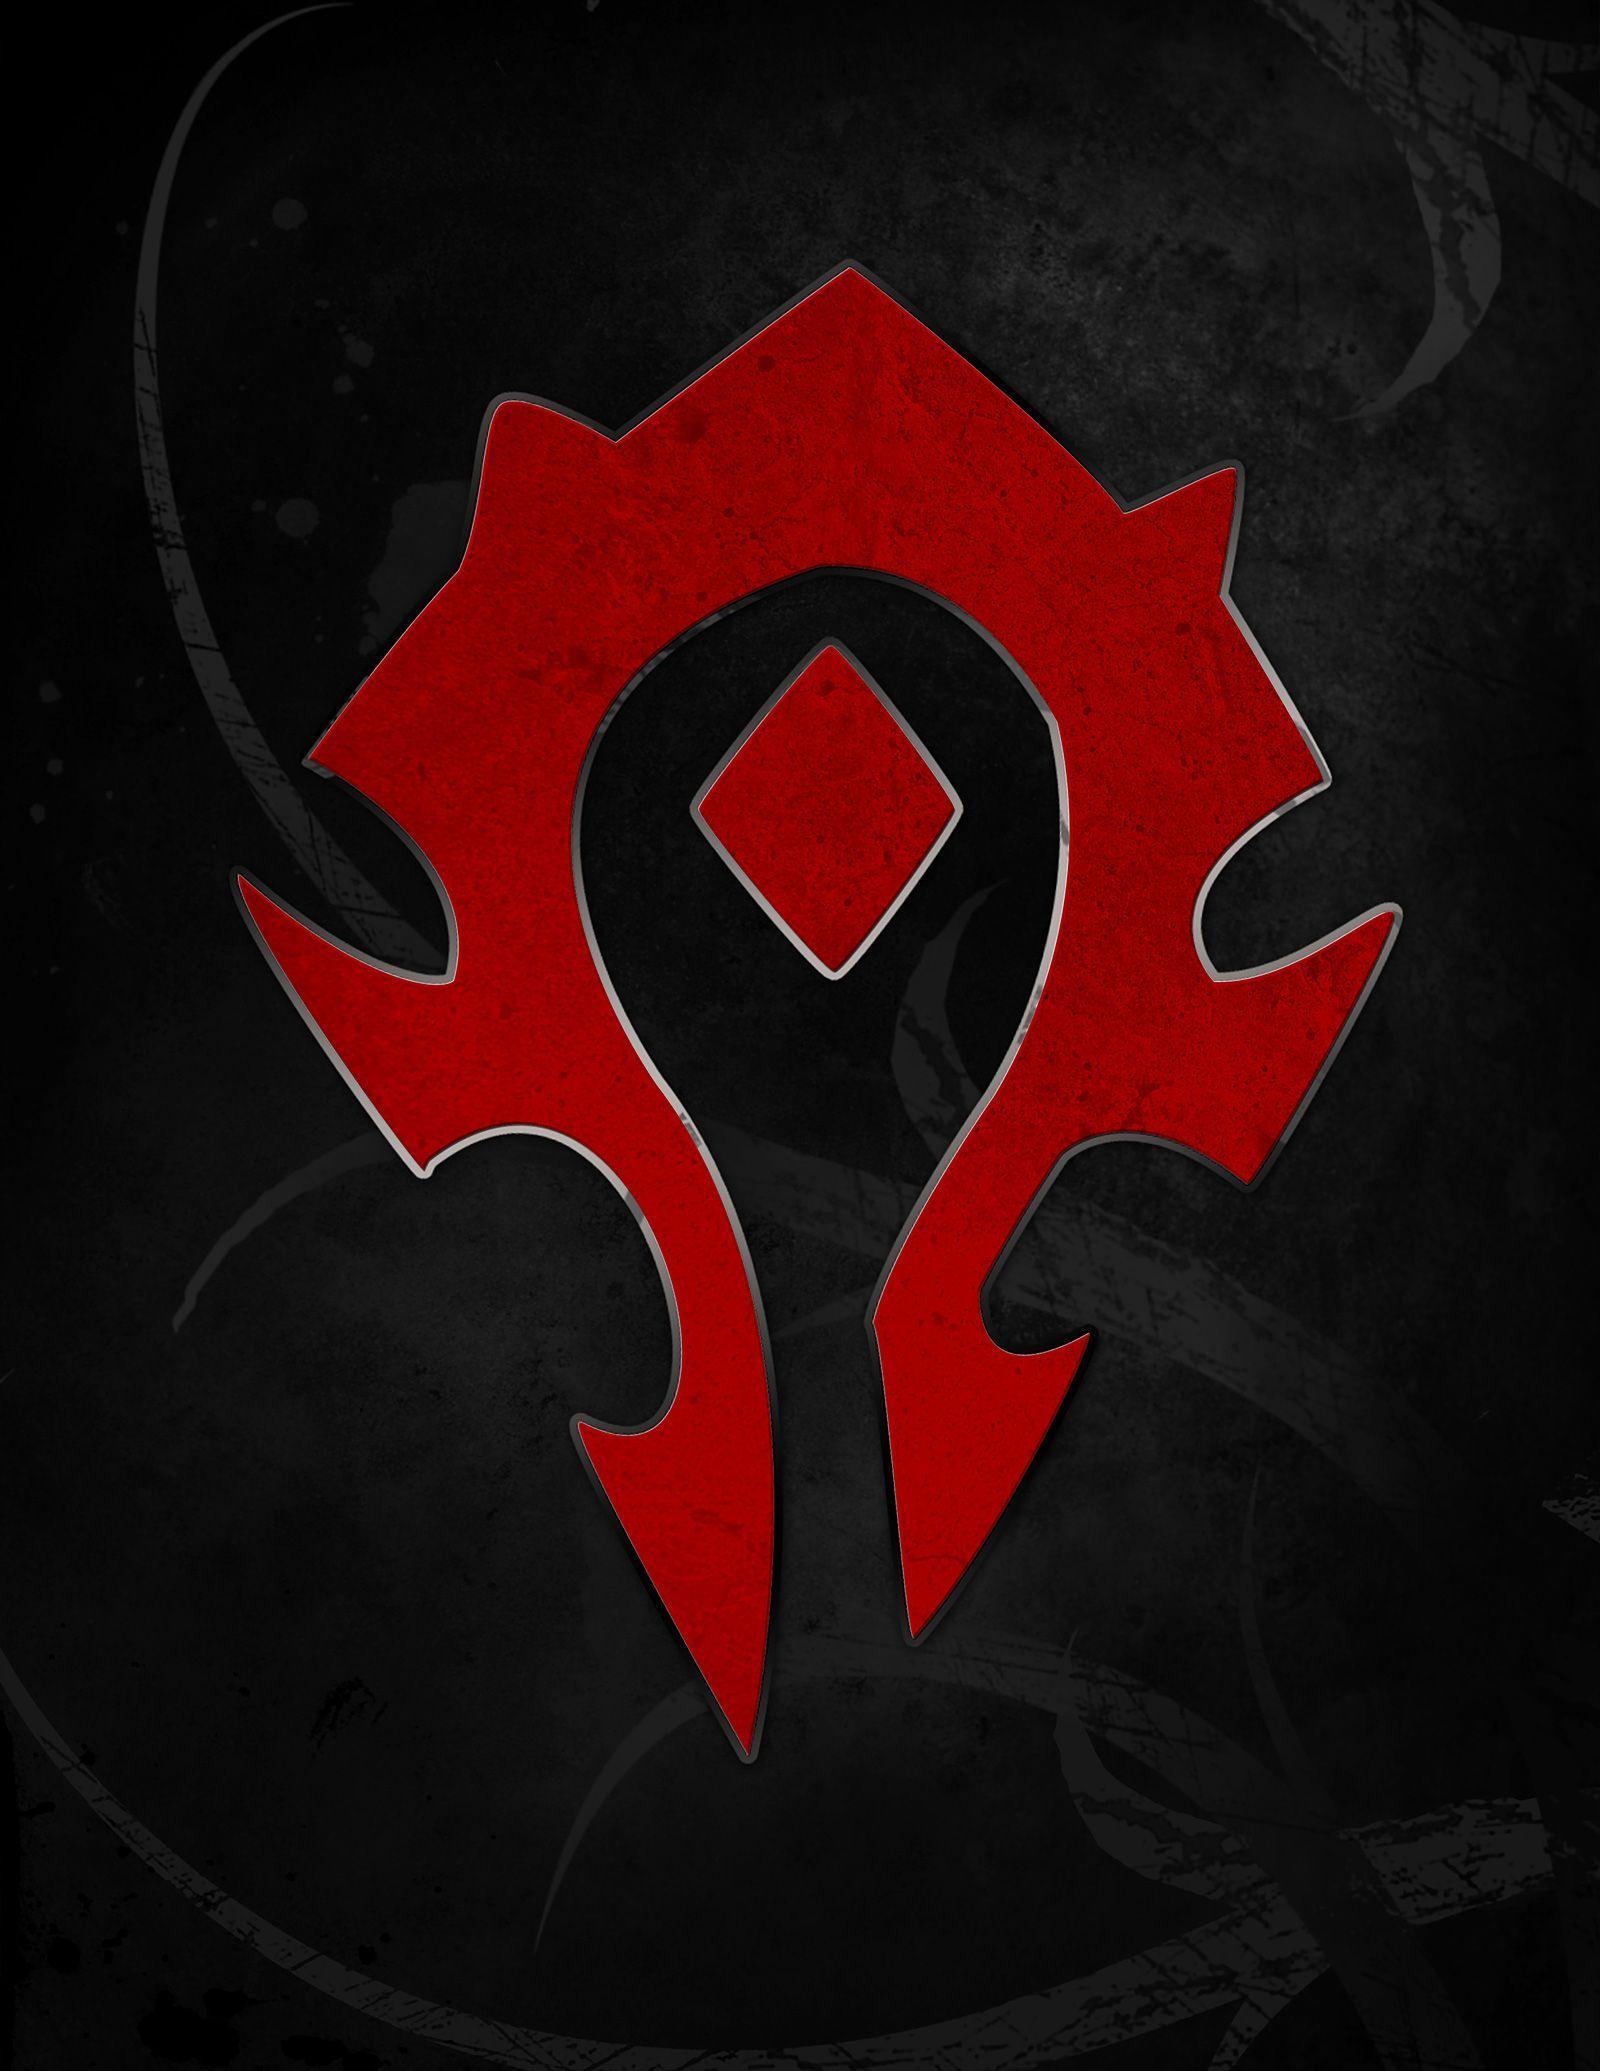 World of Warcraft Horde Logo - World of Warcraft. FOR THE HORDE!!!. random stuff that I like